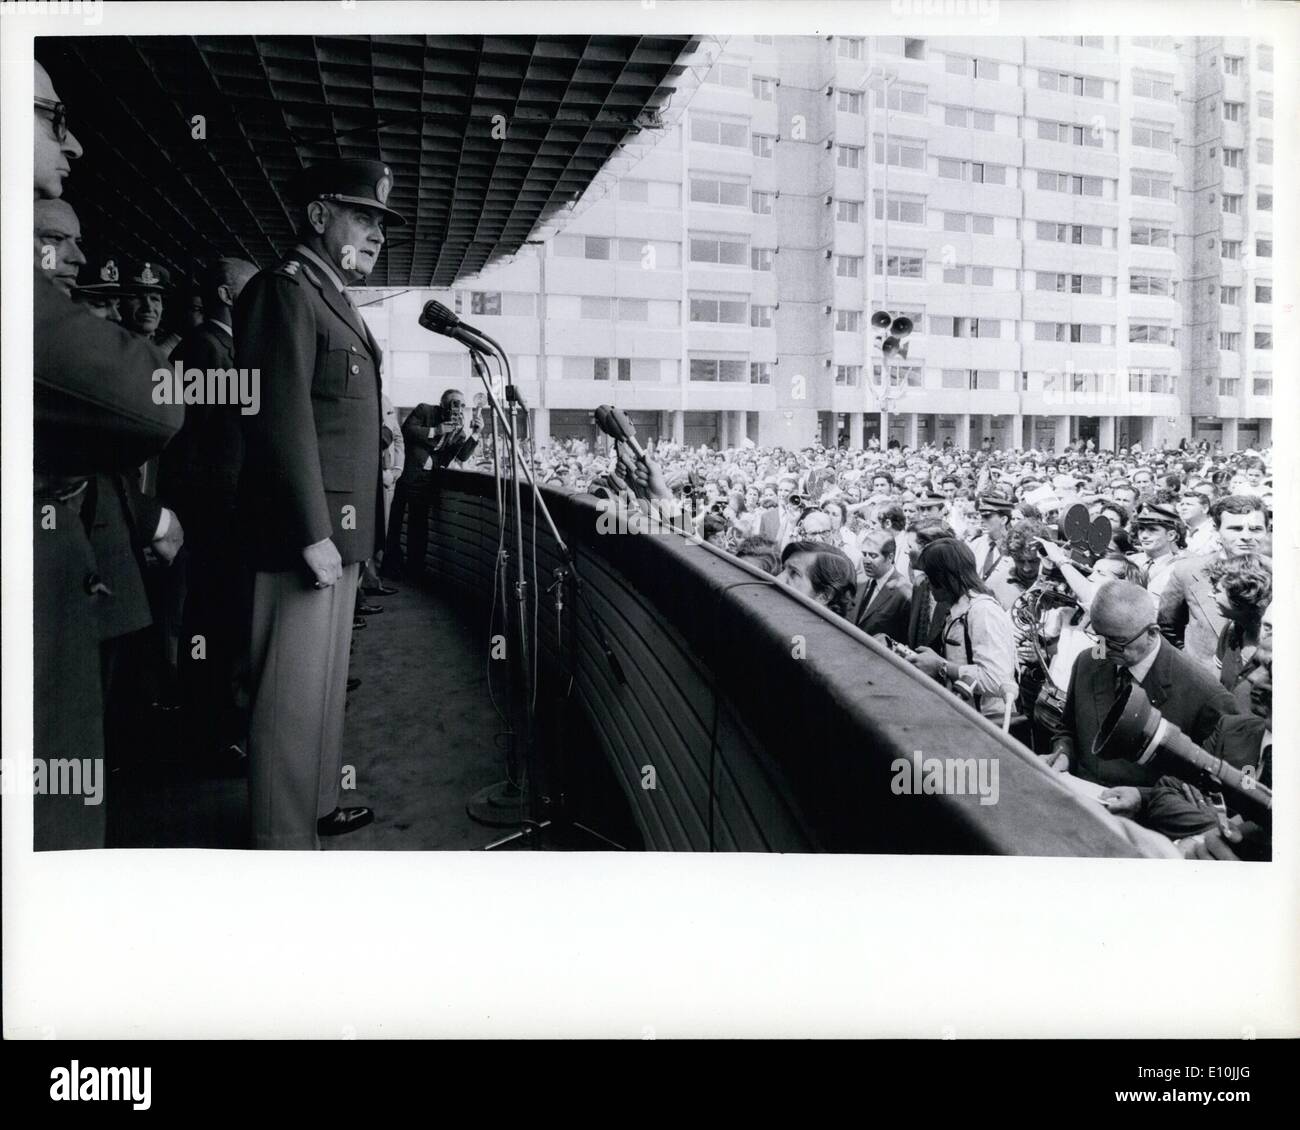 Mar. 03, 1973 - Argentine le président Alejandro p. Lanusse 3000 donnant à l'appartement de travailleurs municipaux dans le cadre d'un programme pour fournir un logement à 11 000 familles dans la région de Ciudad General Belgrano, Banque D'Images